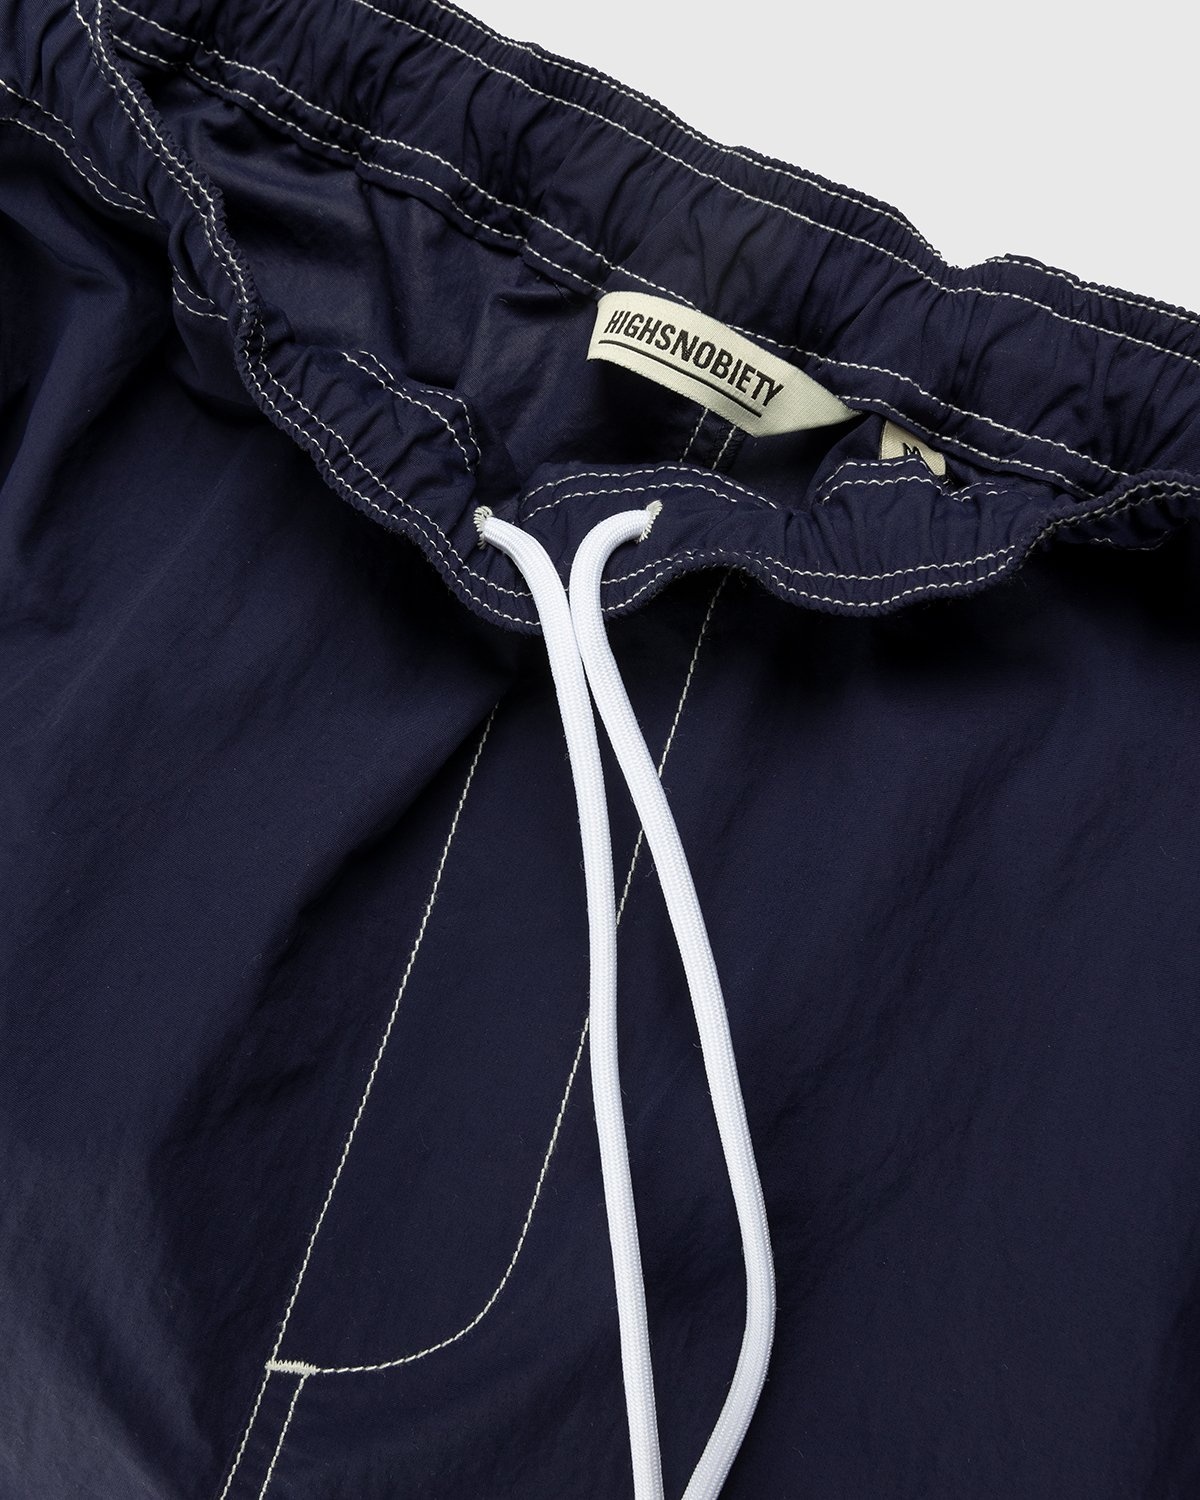 Highsnobiety – Contrast Brushed Nylon Elastic Pants Navy - Pants - Blue - Image 5